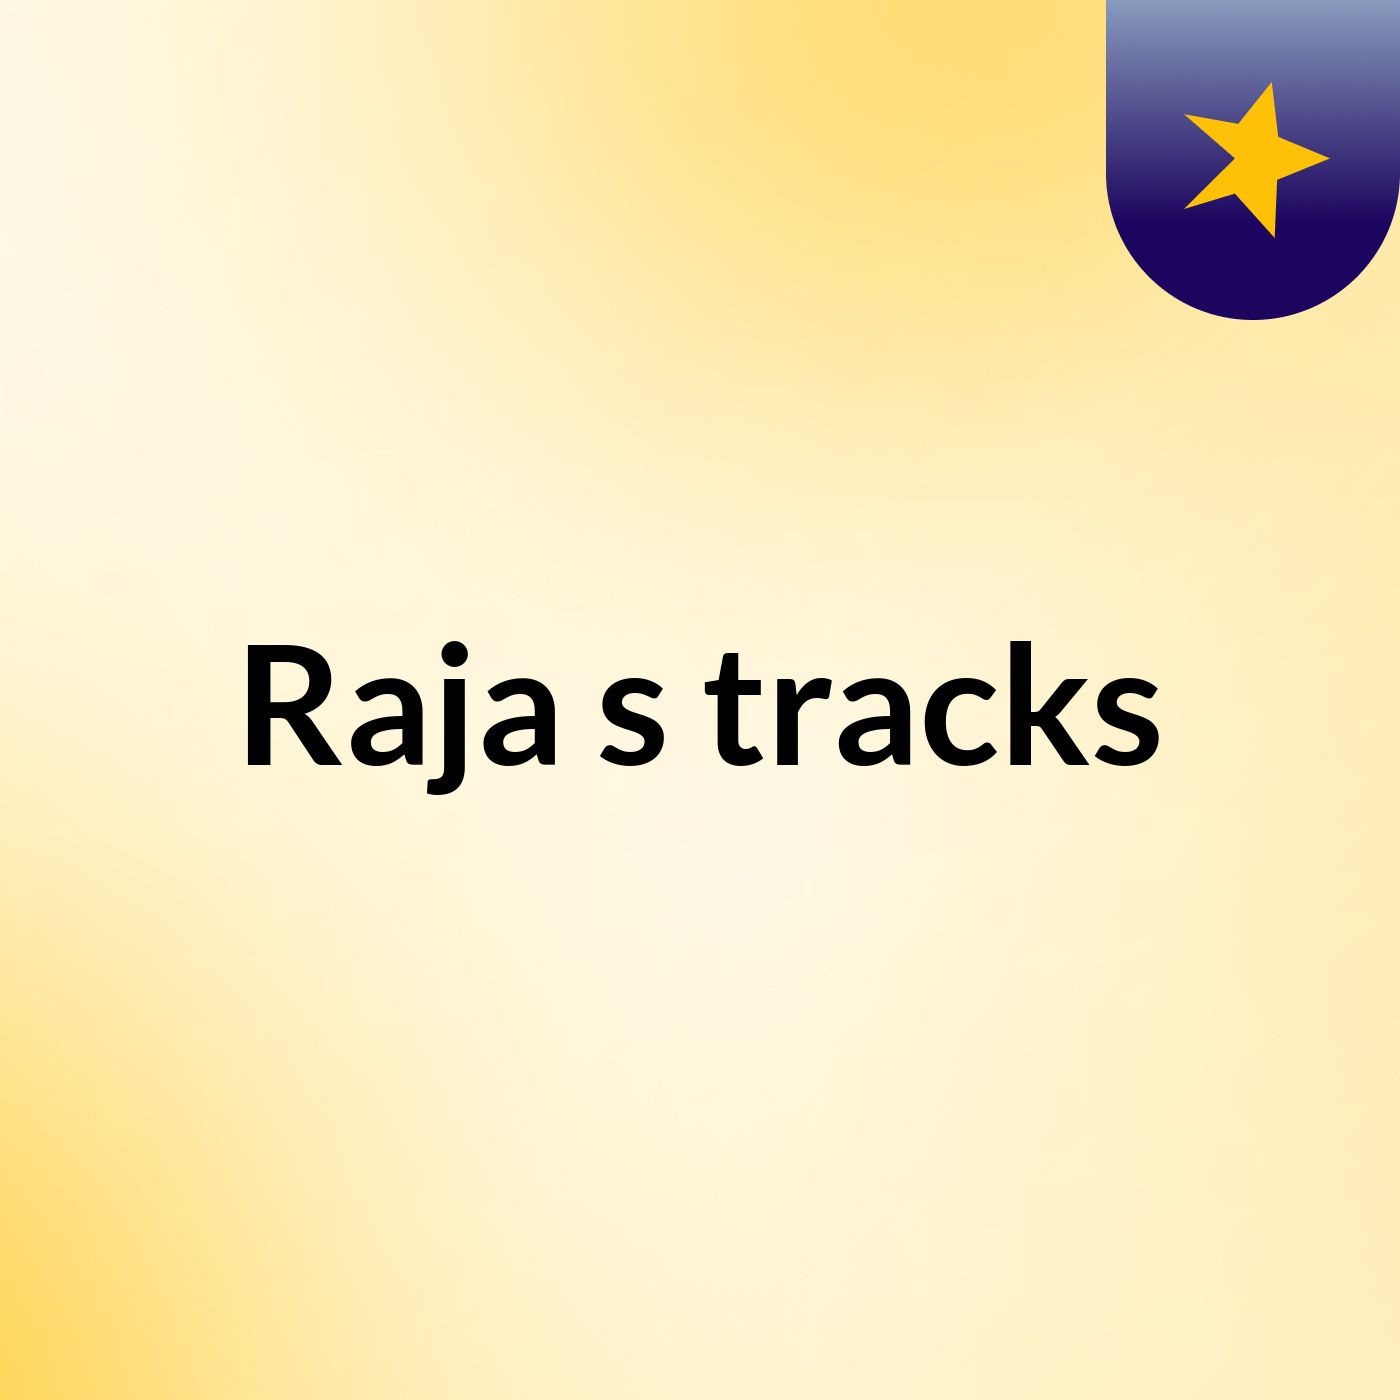 Raja's tracks